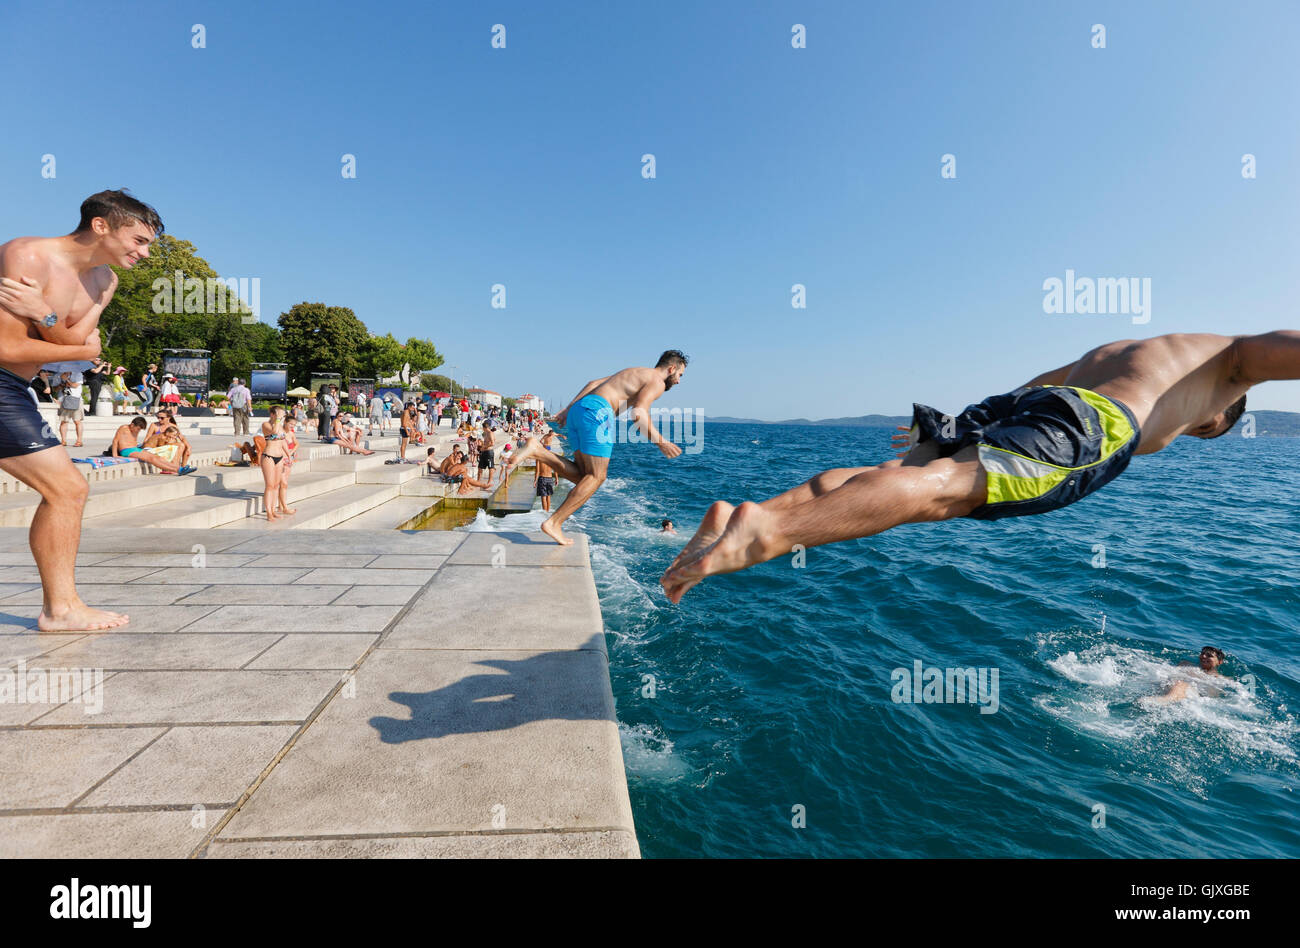 Les touristes de sauter dans l'eau, près de l'orgue de la mer à Zadar Banque D'Images